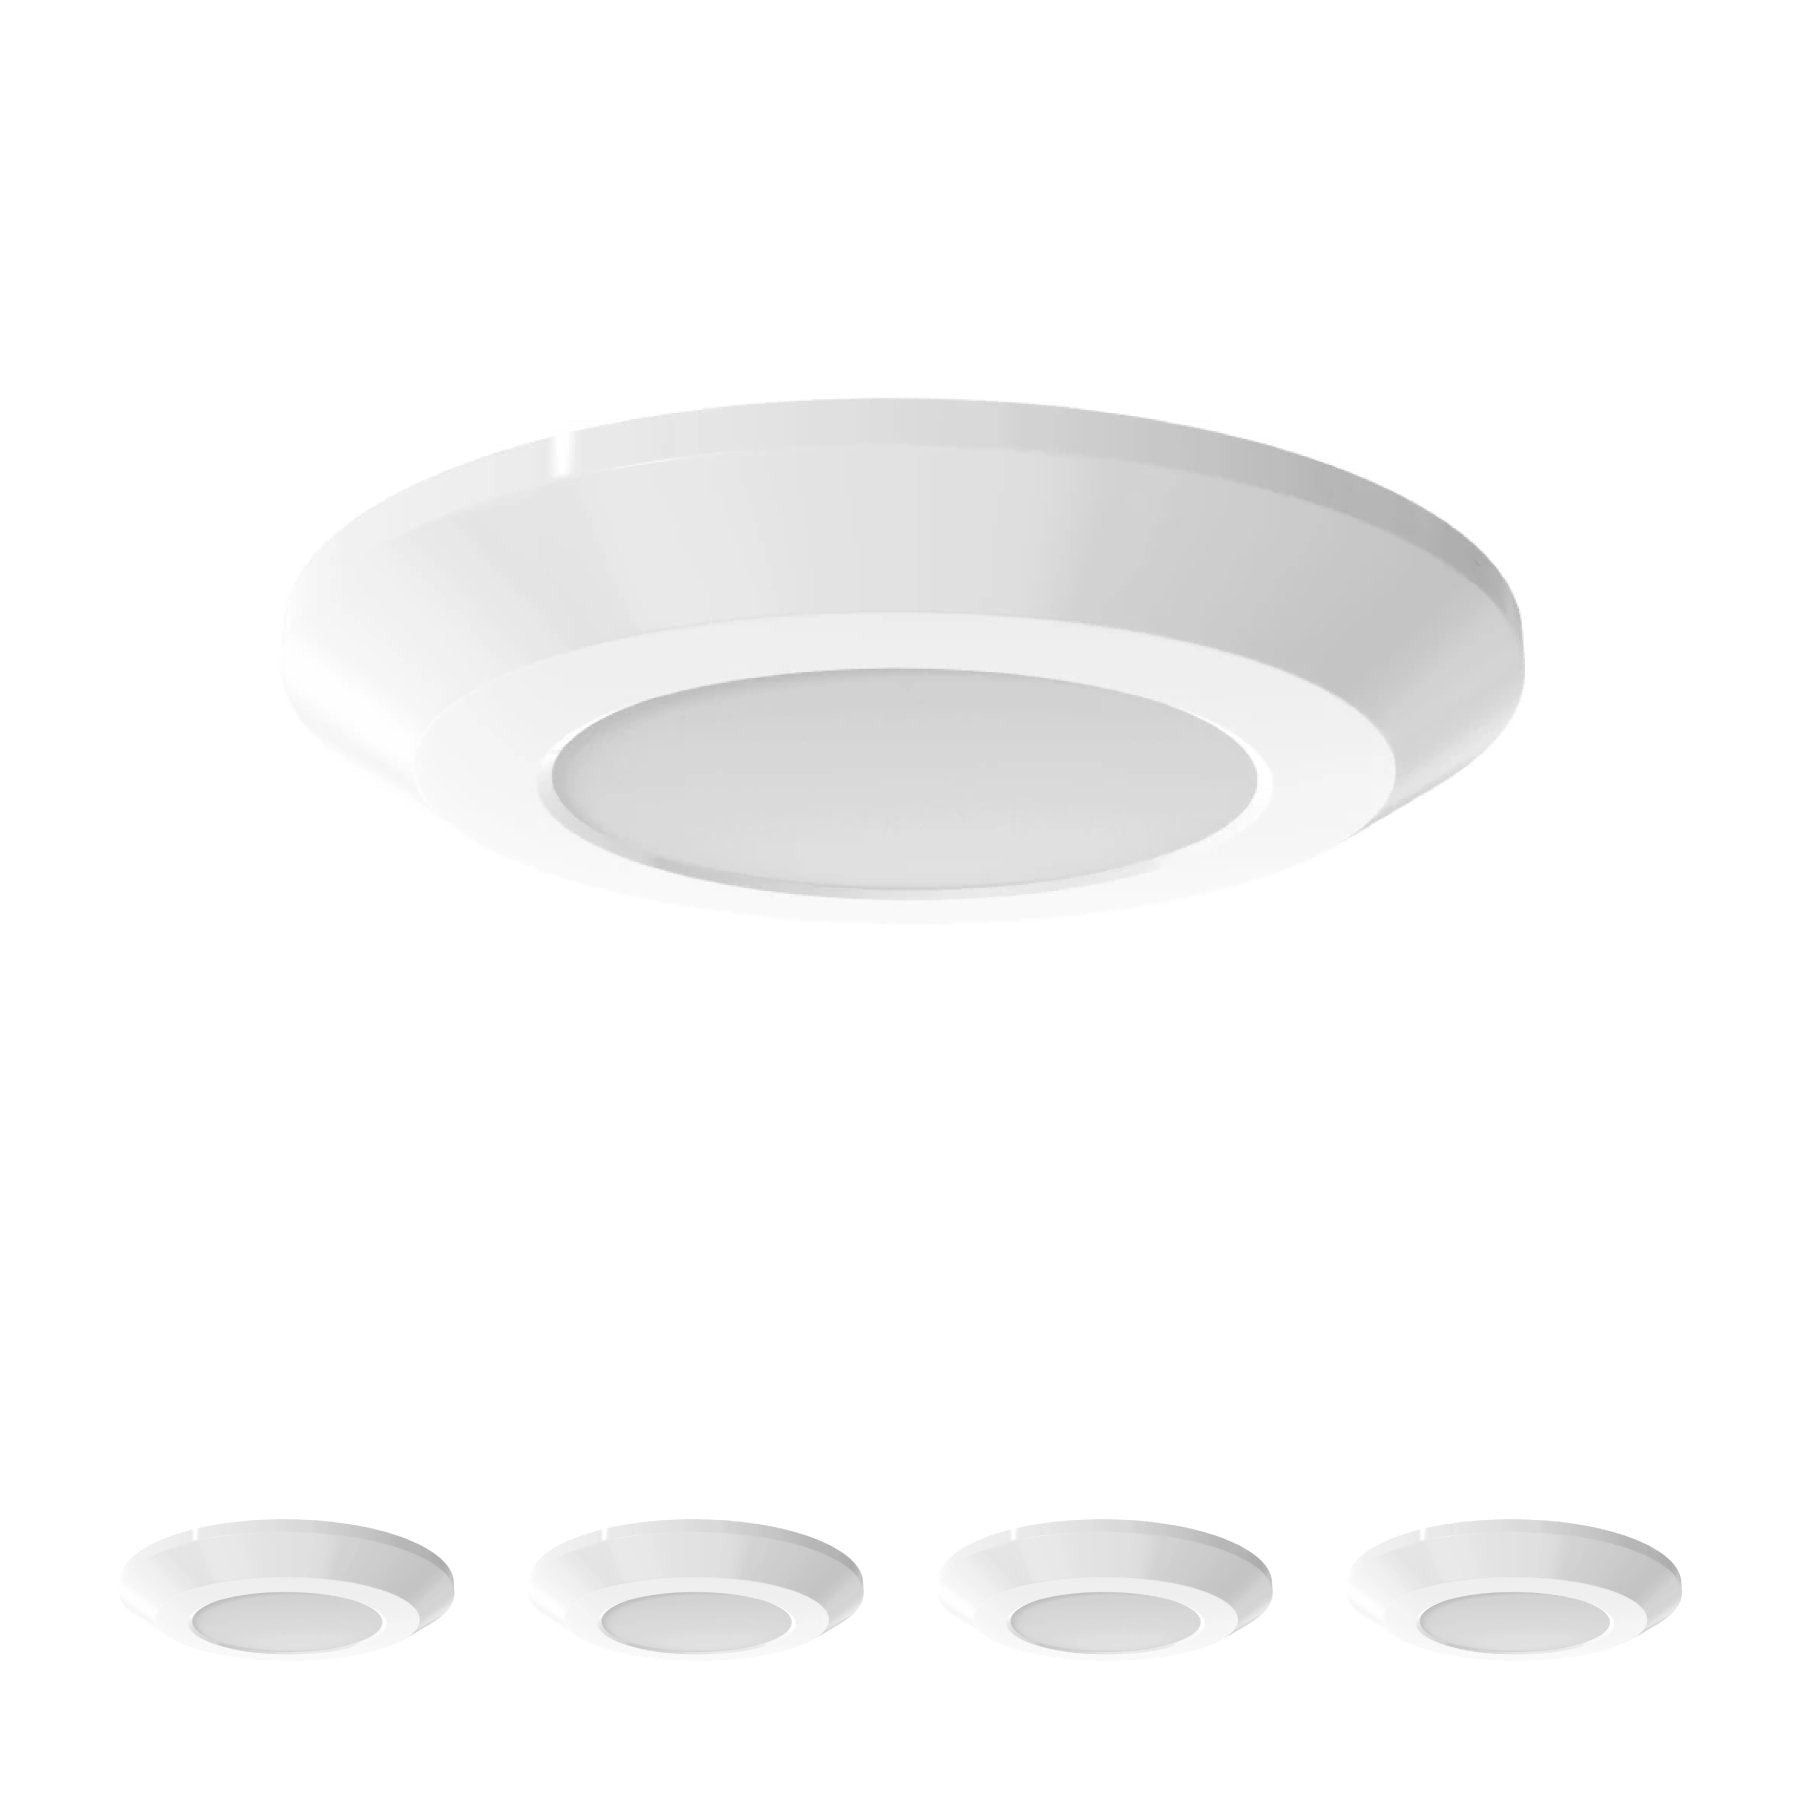 3-5w-slim-led-puck-light-120v-200-lumens-cct-changeable-3000k-4000k-5000k-white